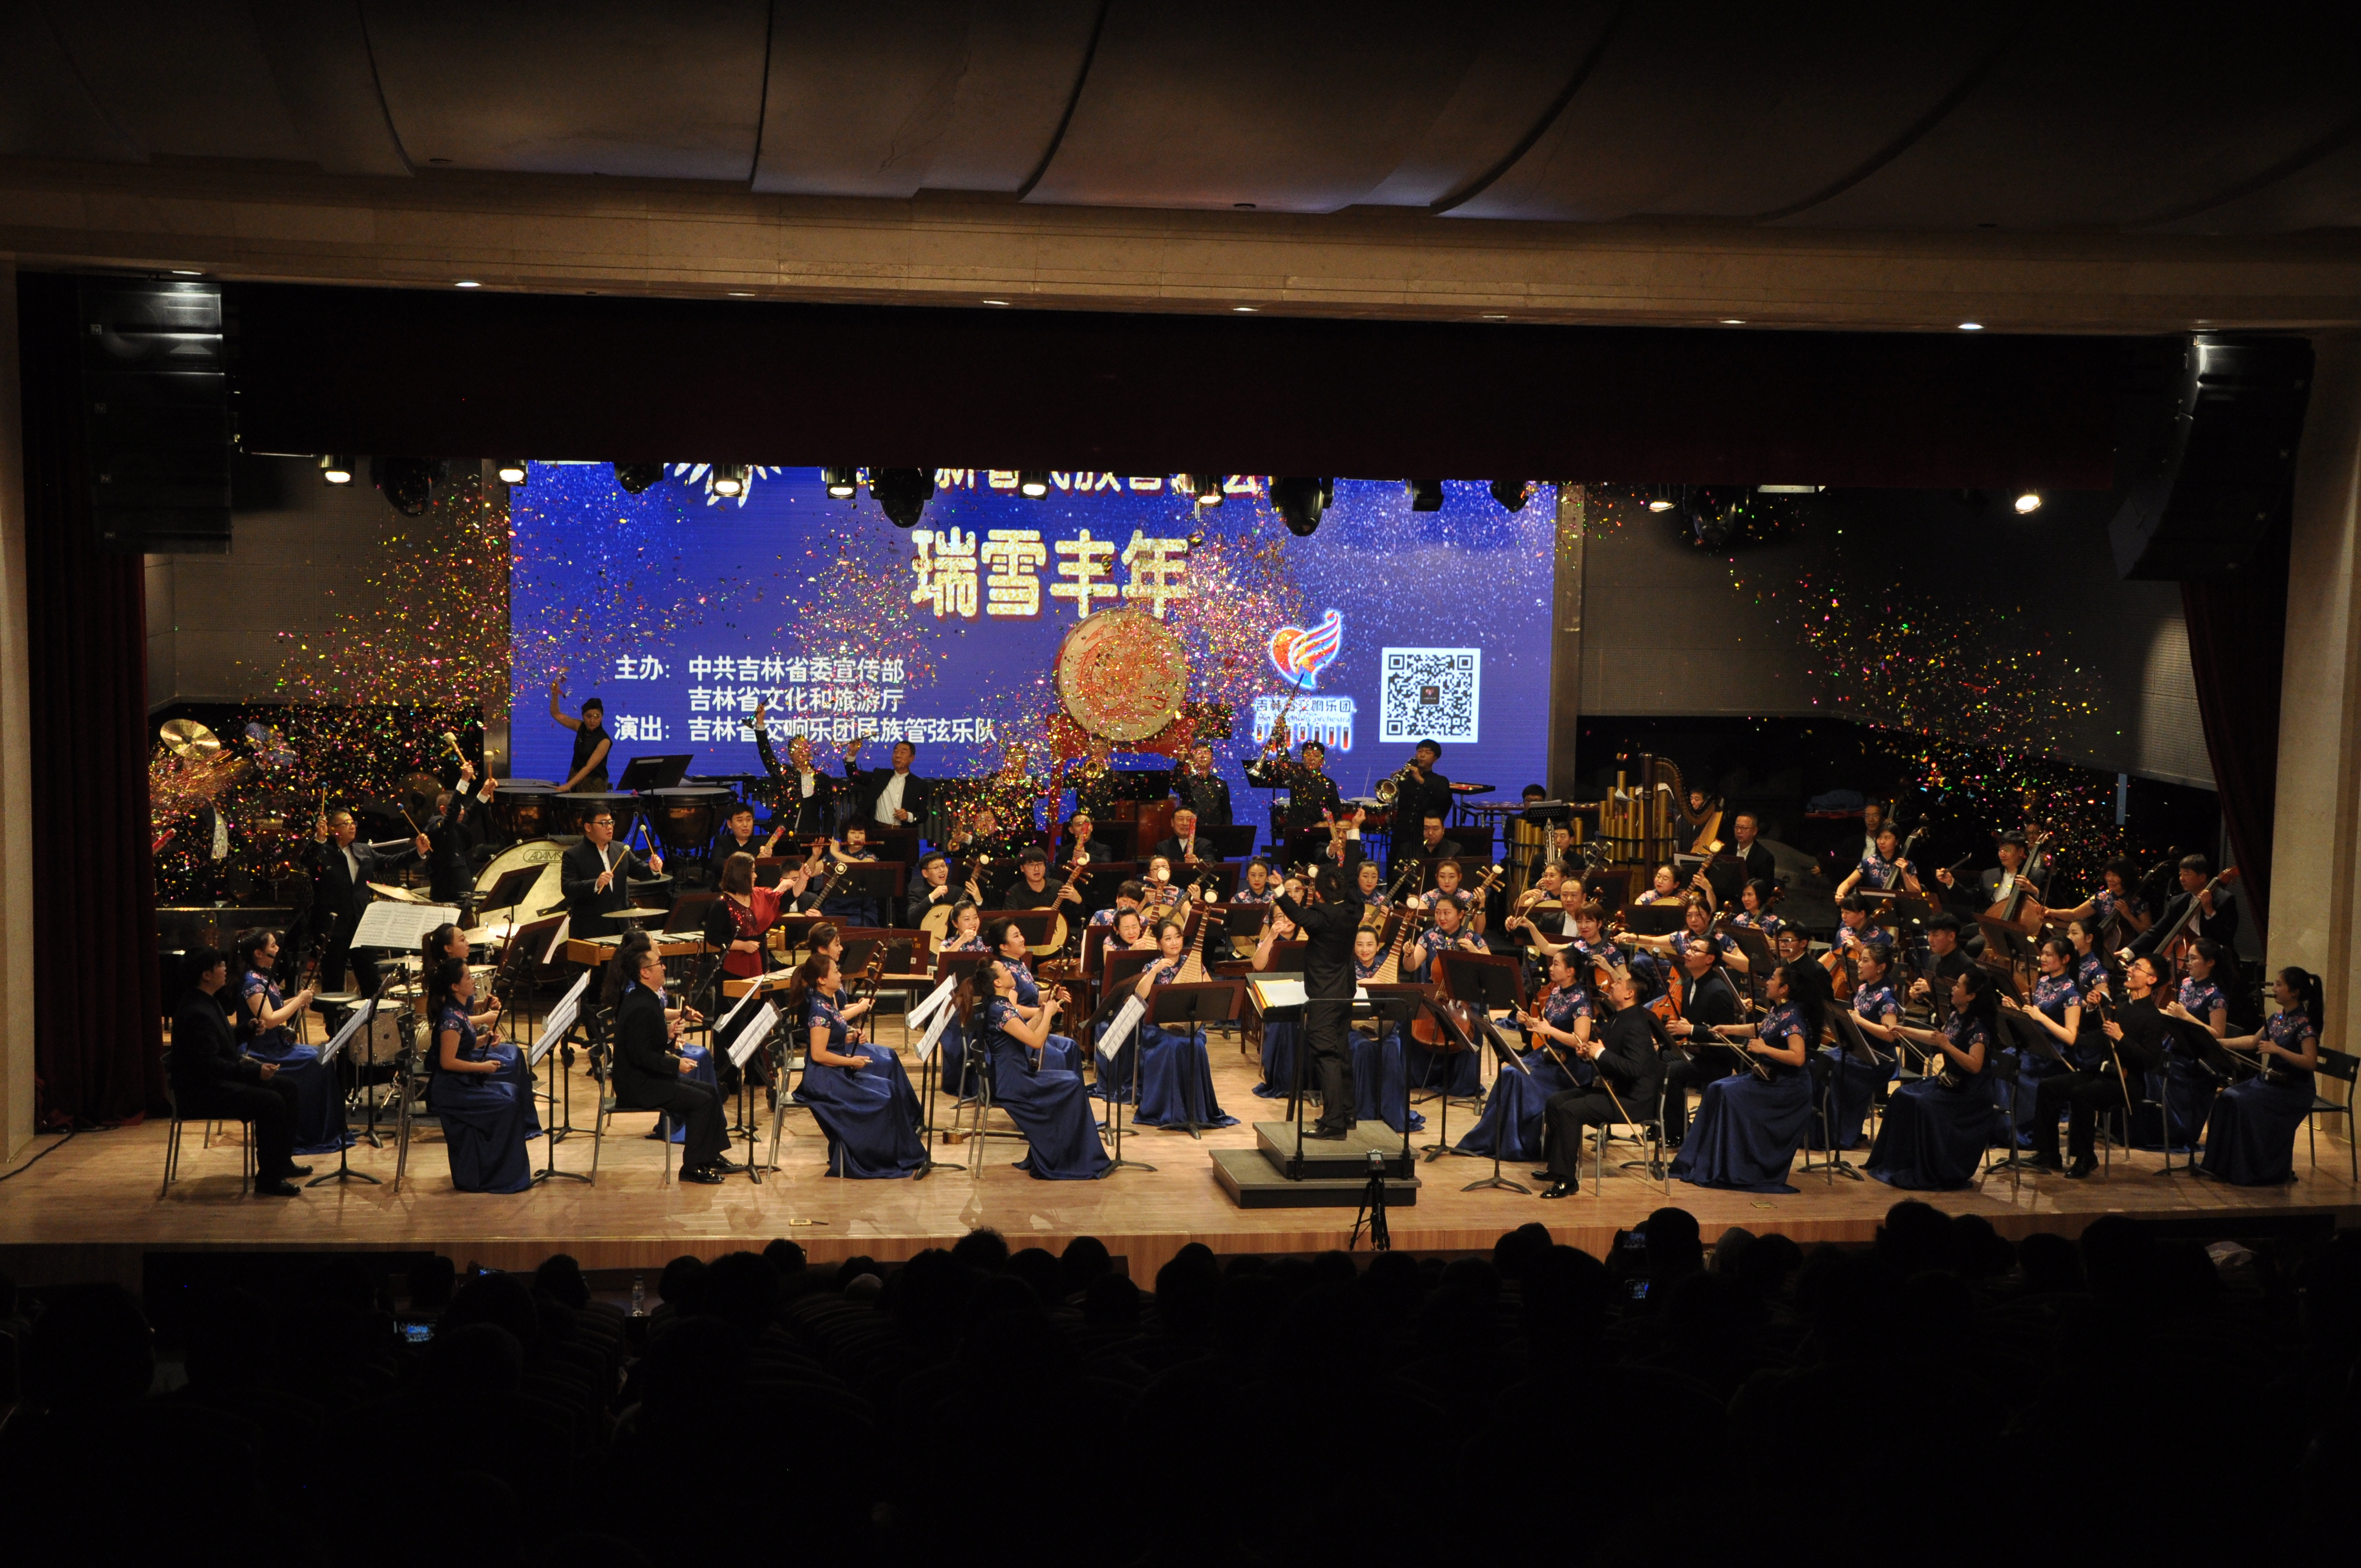 С самыми добрыми новогодними пожеланиями – Симфонический оркестр провинции Цзилинь исполнил концерт в «потрясающем национальном стиле»